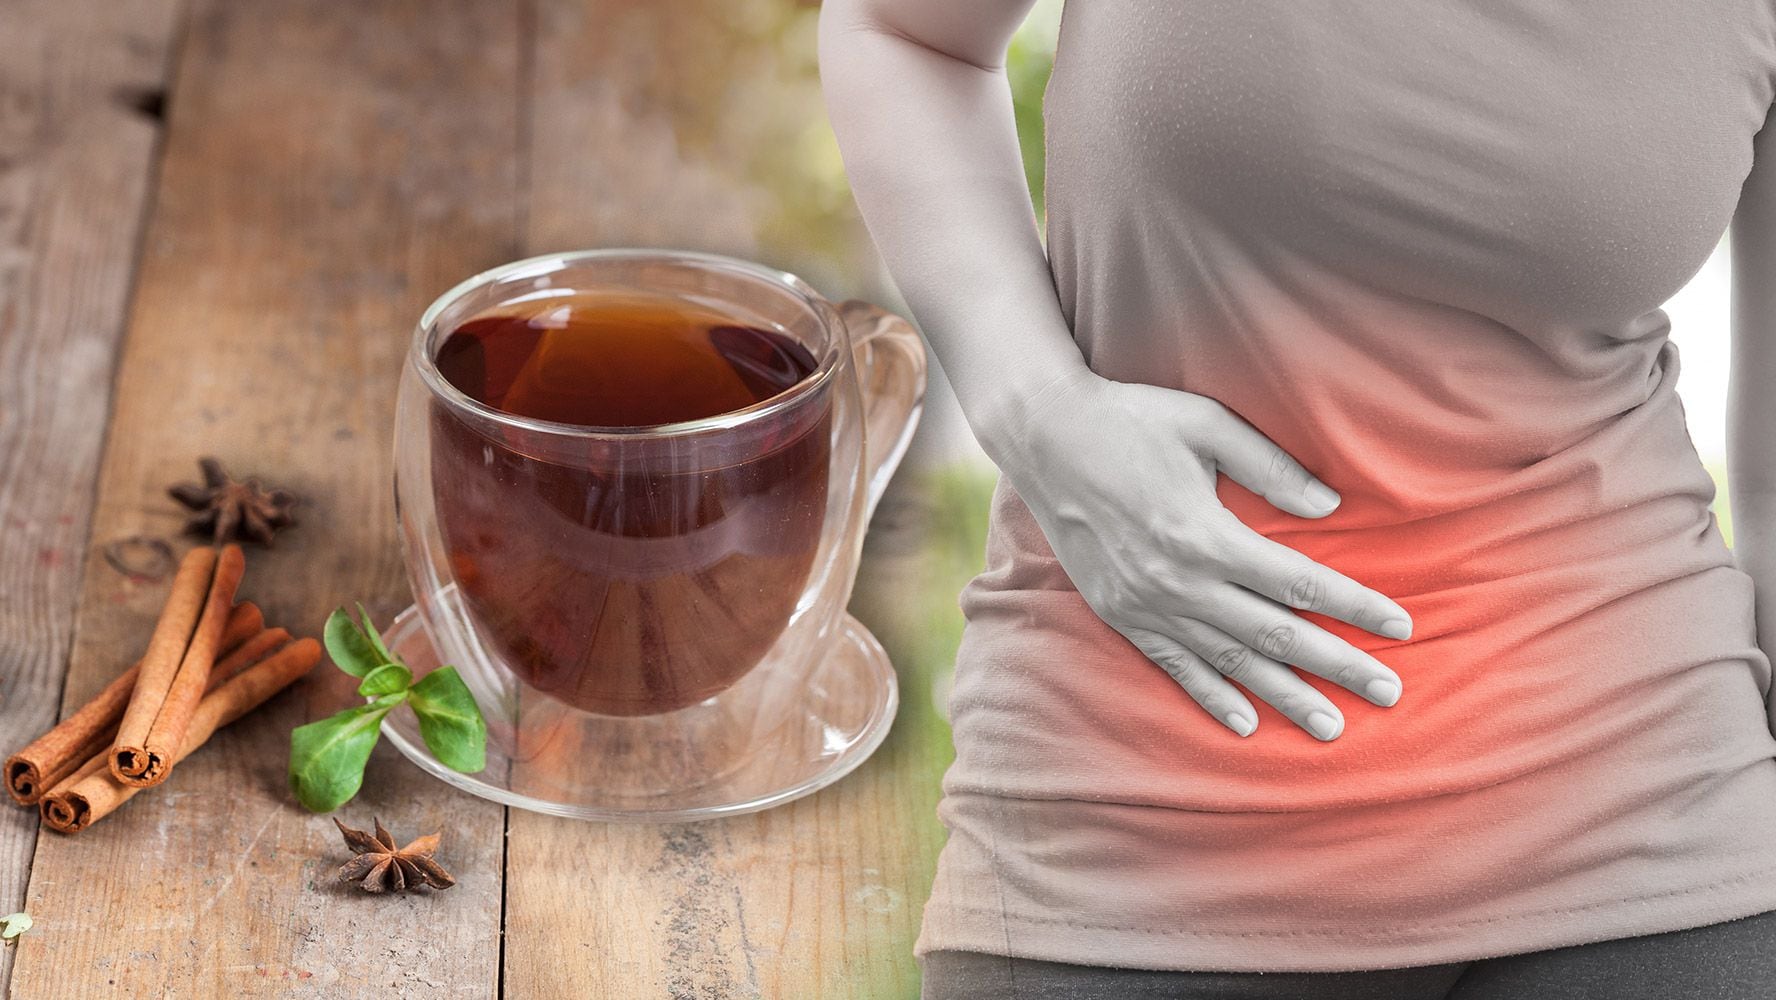 El té de canela es un remedio popular para malestares del estómago, aunque también tiene contraindicaciones. (Foto: Especial / El Financiero).